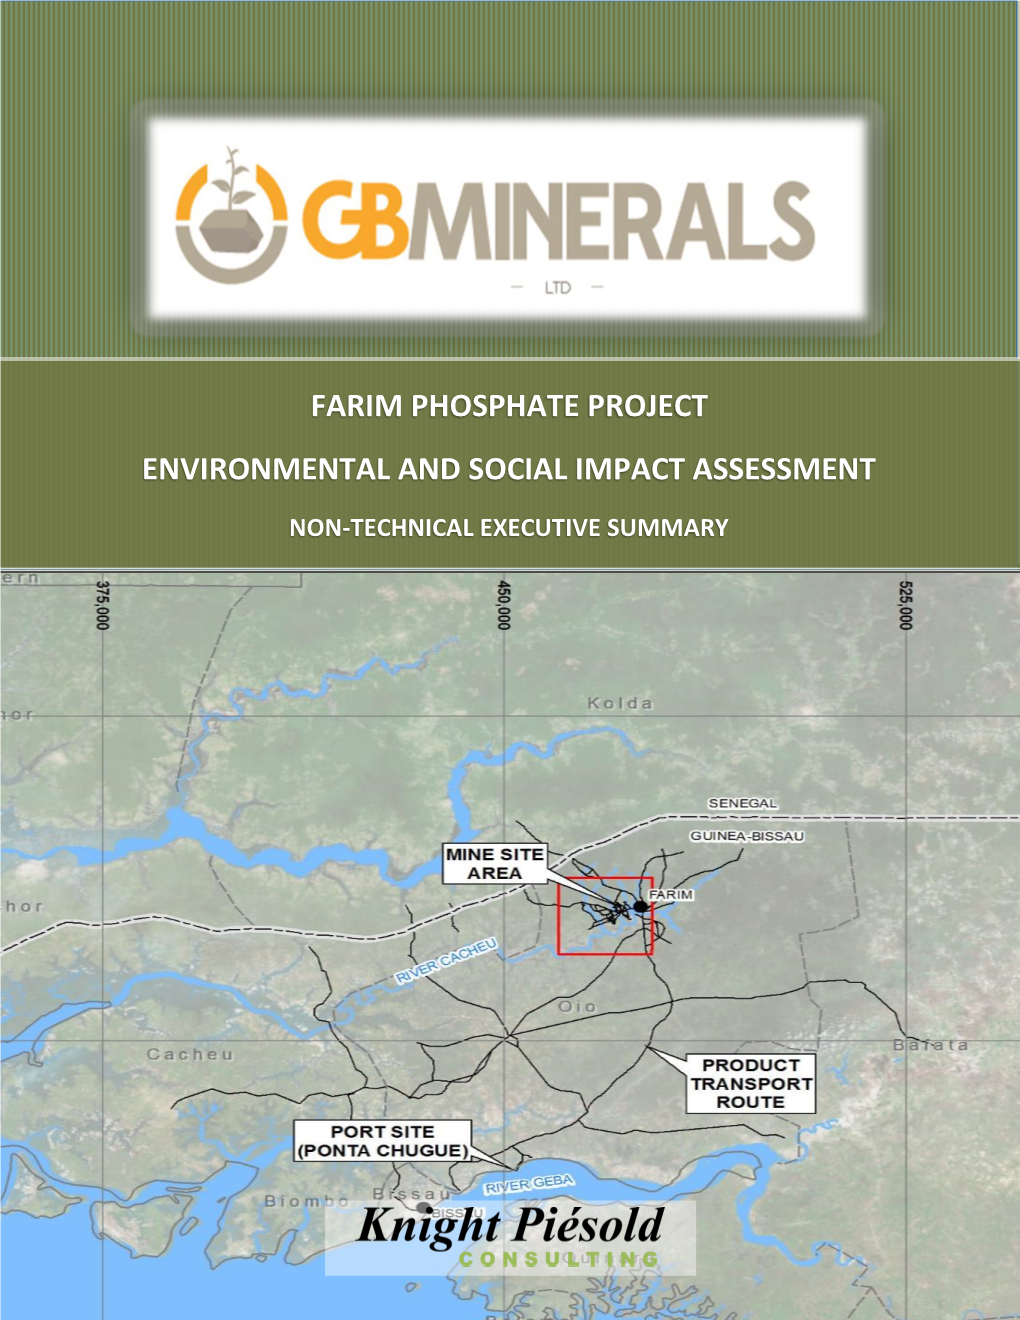 Gb Minerals Ltd. Farim Phosphate Project